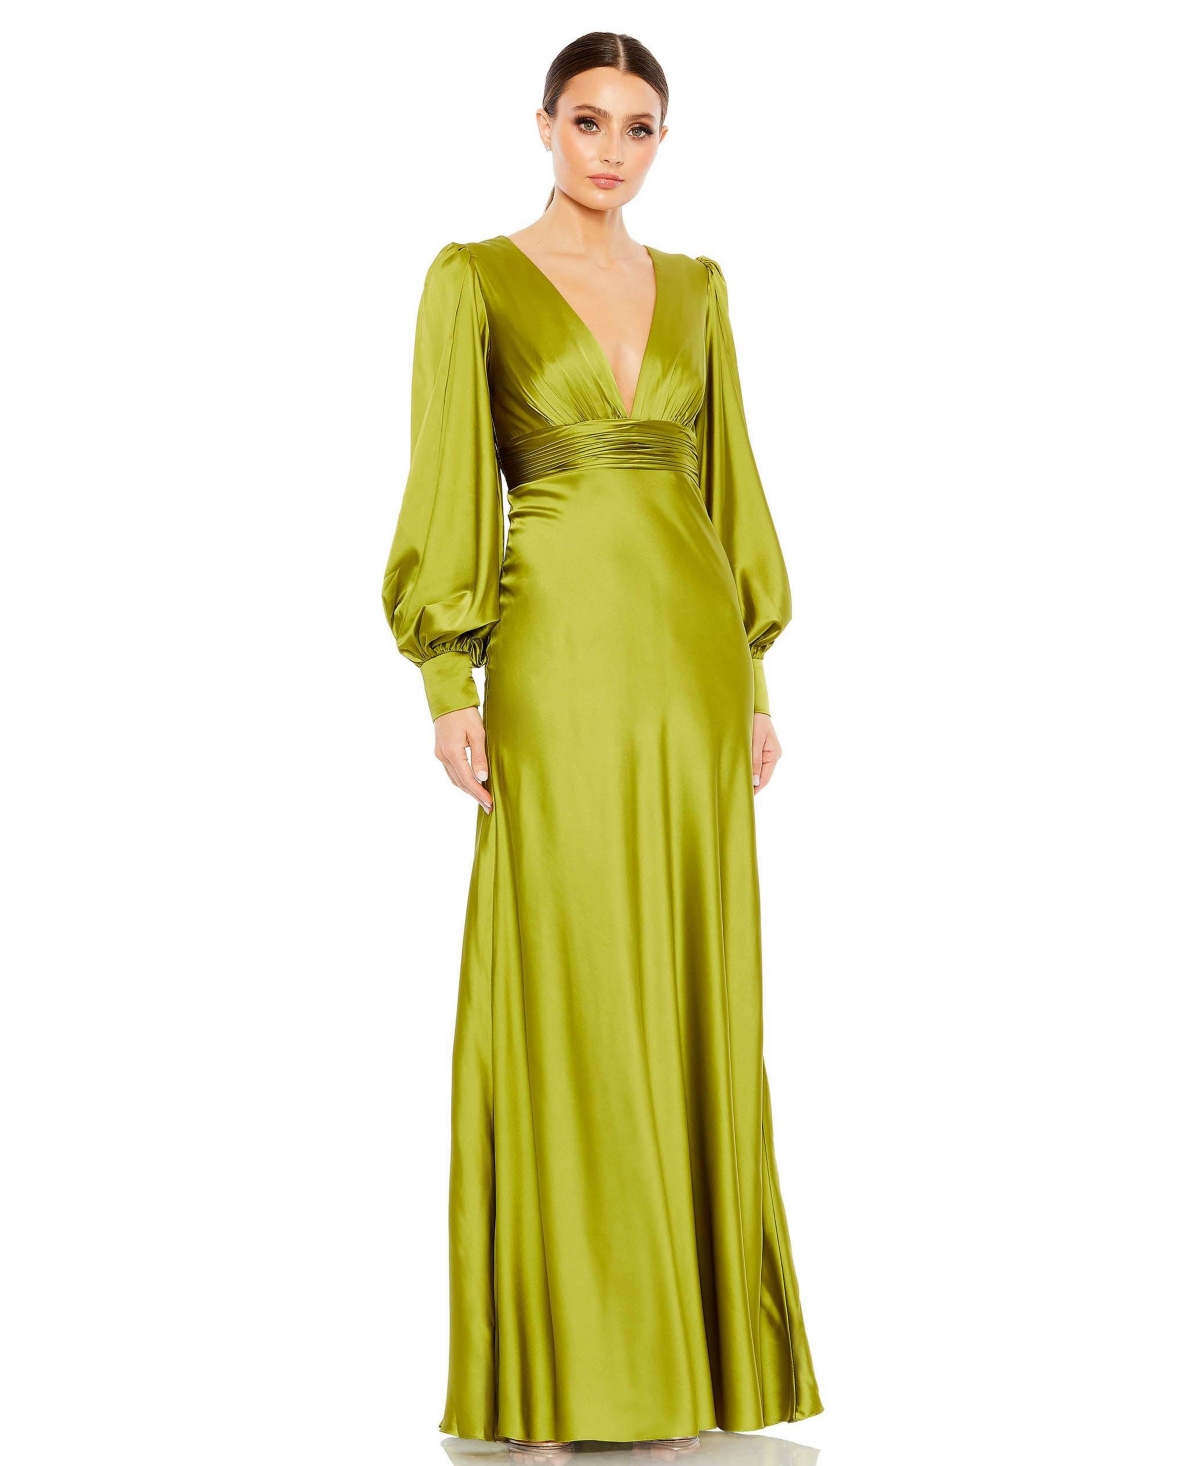 Vintage Evening Dresses, Vintage Formal Dresses Womens Ieena Charmeuse Bishop Sleeve V Neck Gown - Apple green $498.00 AT vintagedancer.com